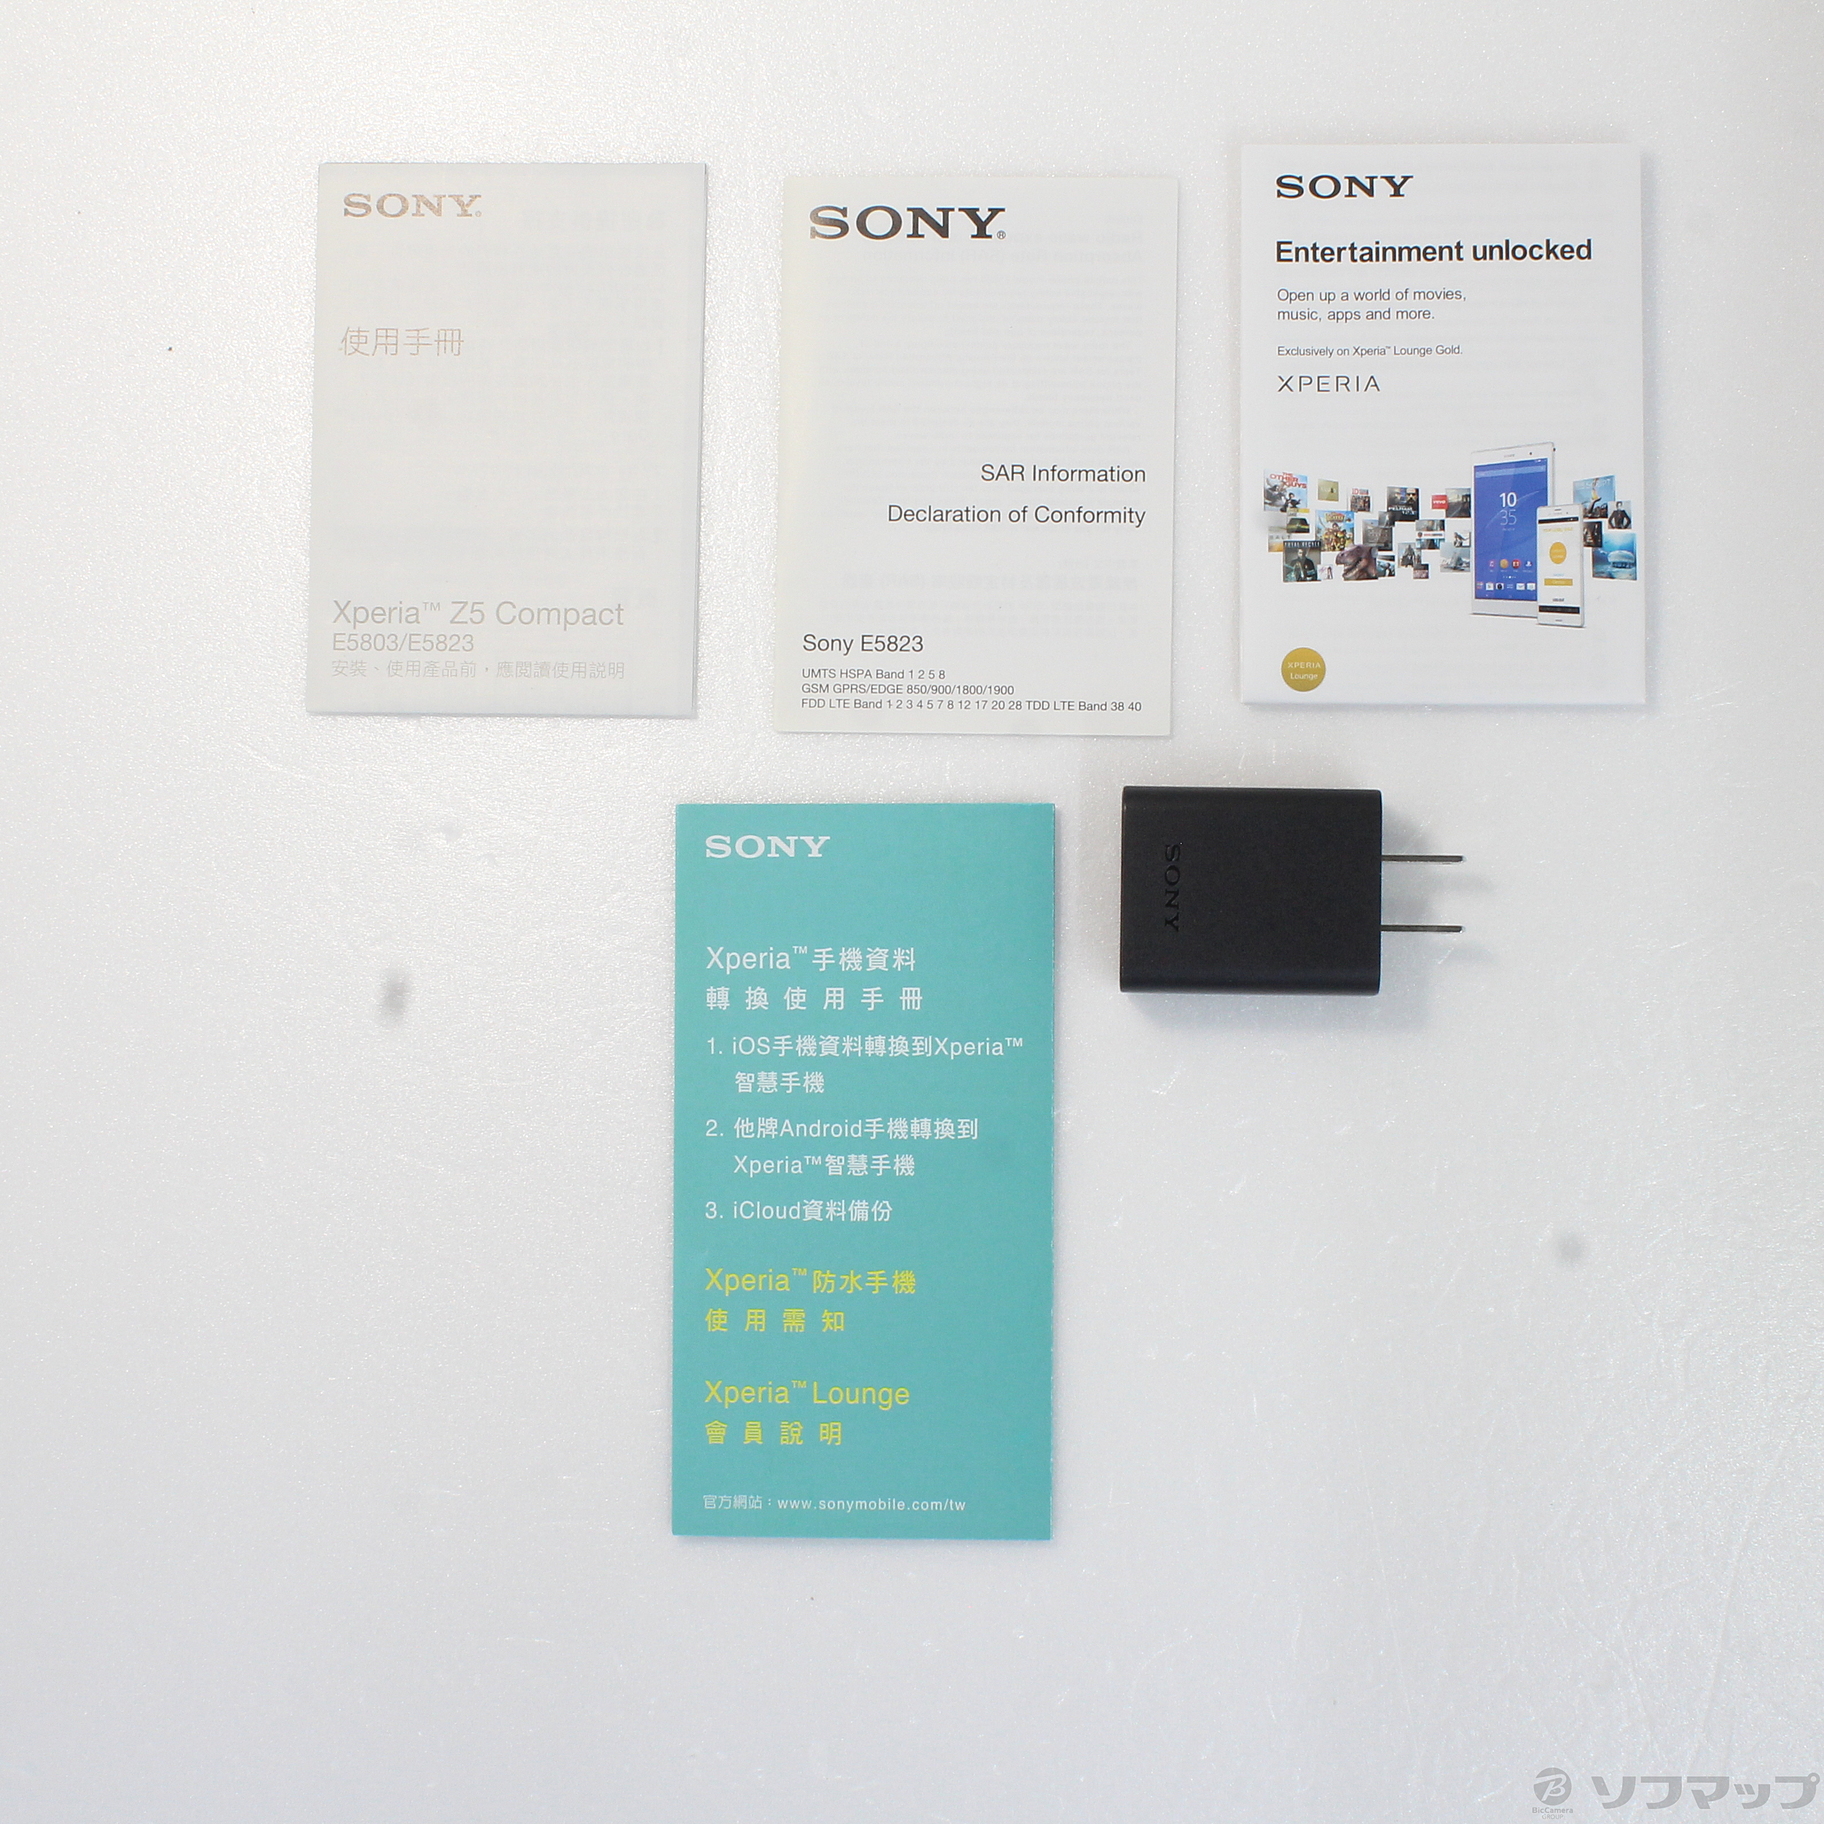 SONY Sony Xperia Z5 Compact E5823 LTE